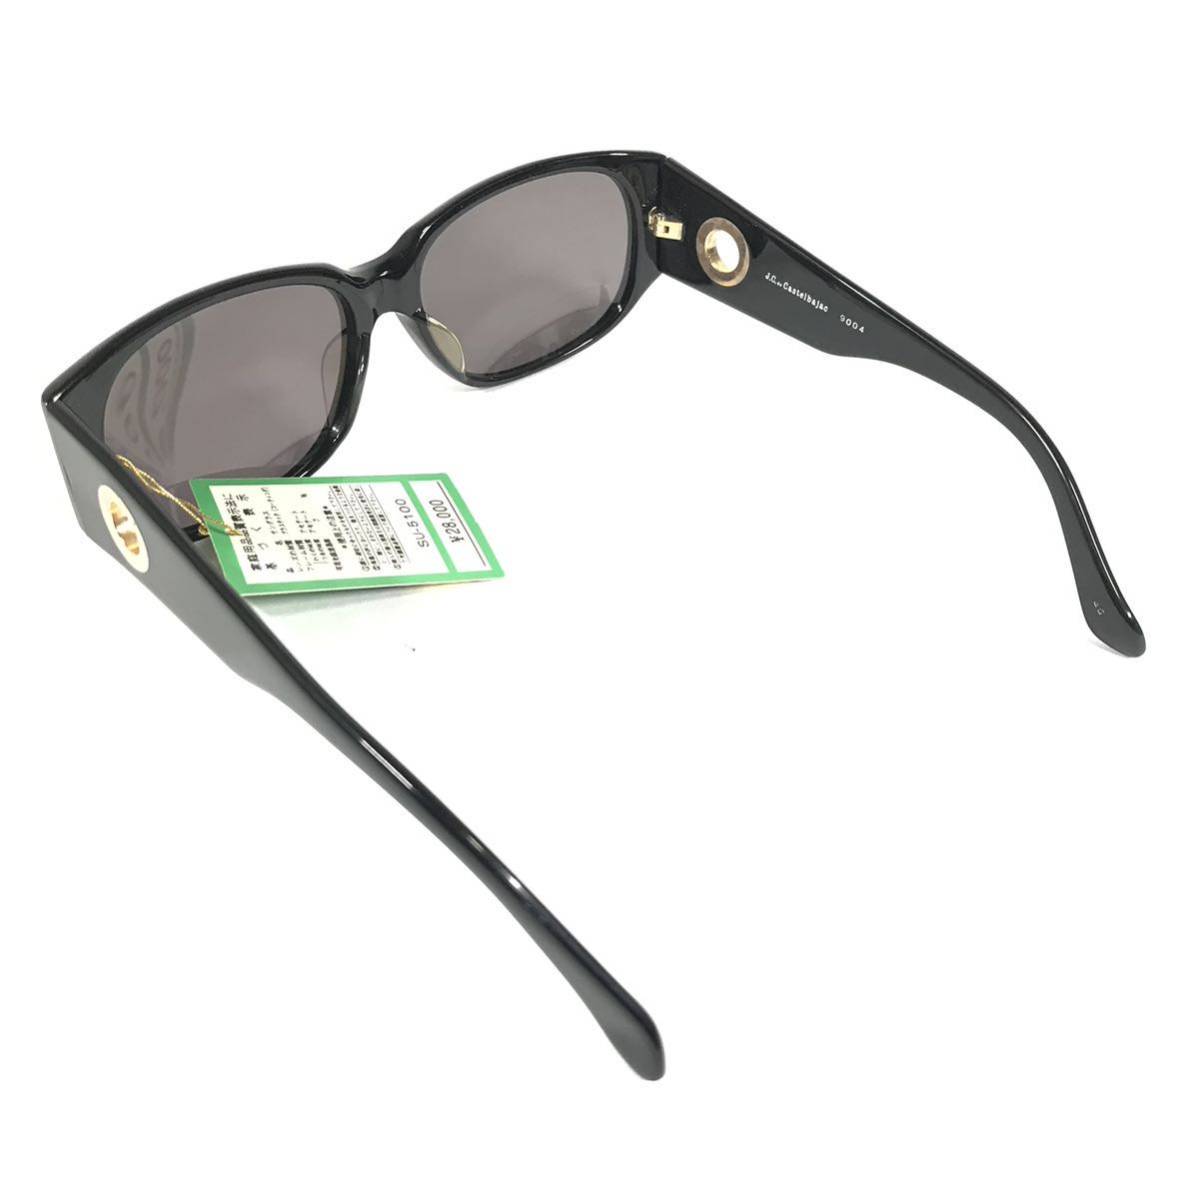  не использовался товар [ Castelbajac ] подлинный товар Castelbajac солнцезащитные очки Logo металлические принадлежности 9004 серый × чёрный цвет серия мужской женский обычная цена 2.8 десять тысяч иен стоимость доставки 520 иен 5